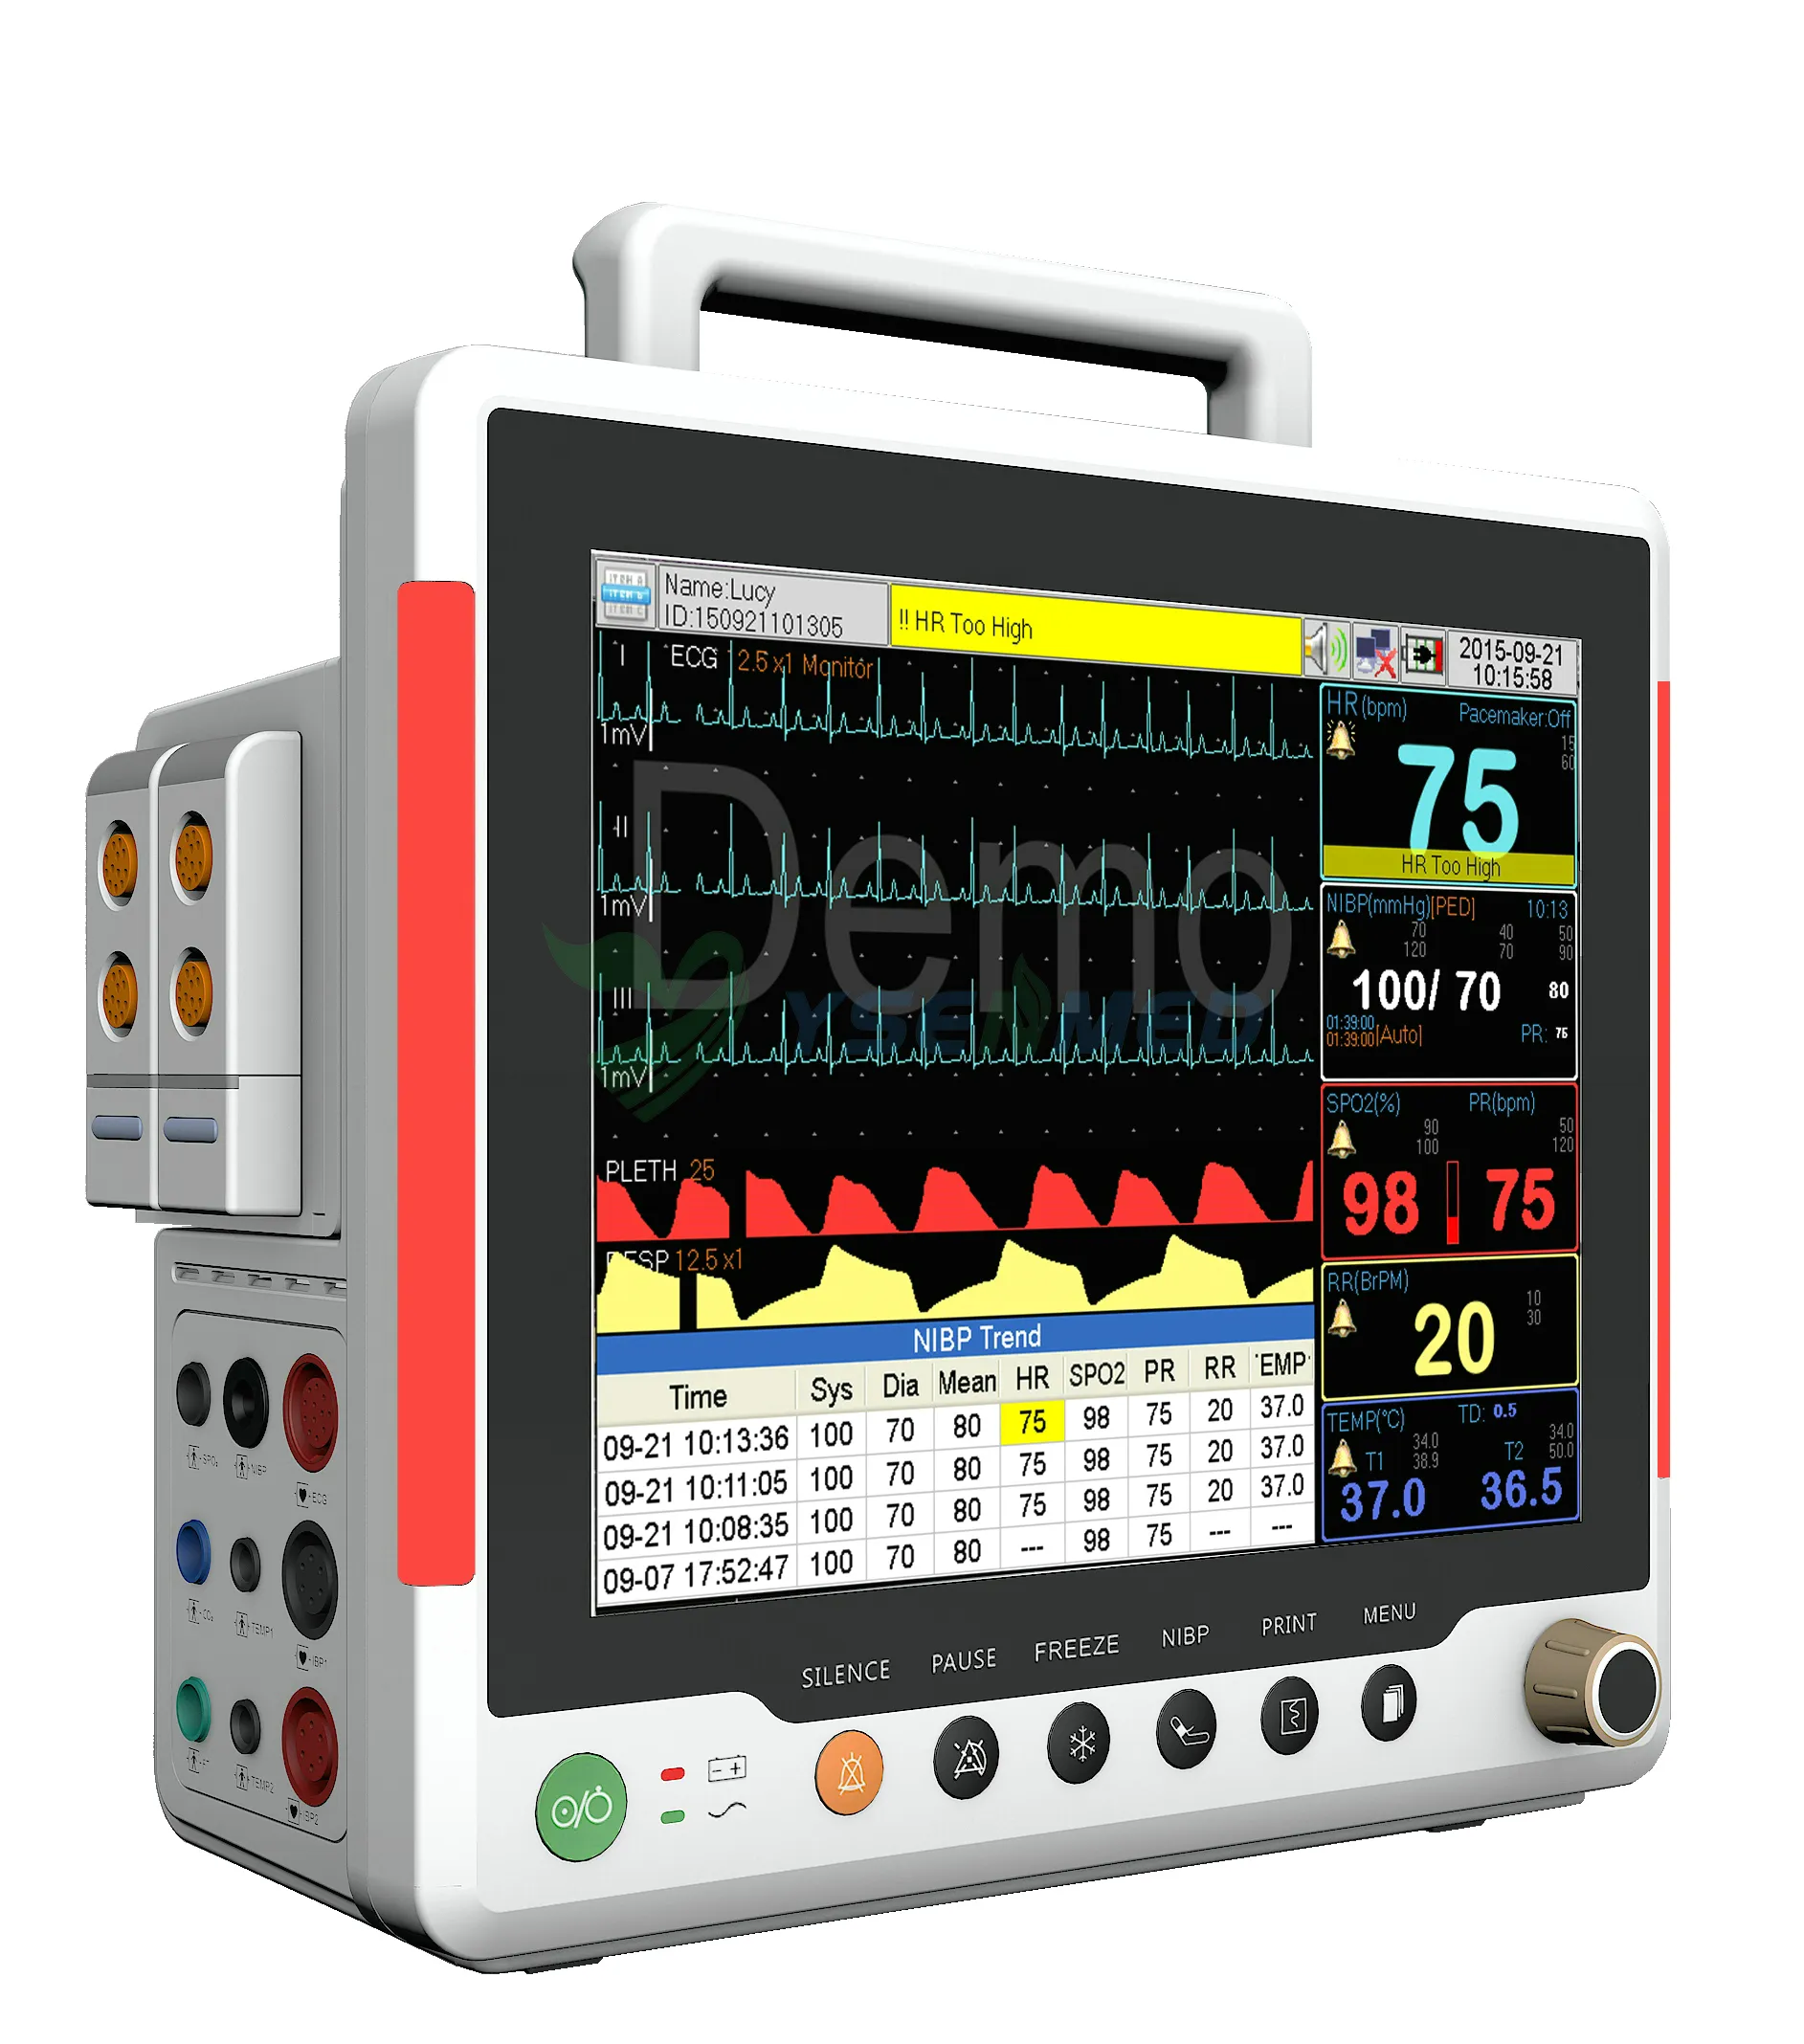 Vídeo de introducción a la función de los botones del monitor de paciente multiparamétrico YSF8.